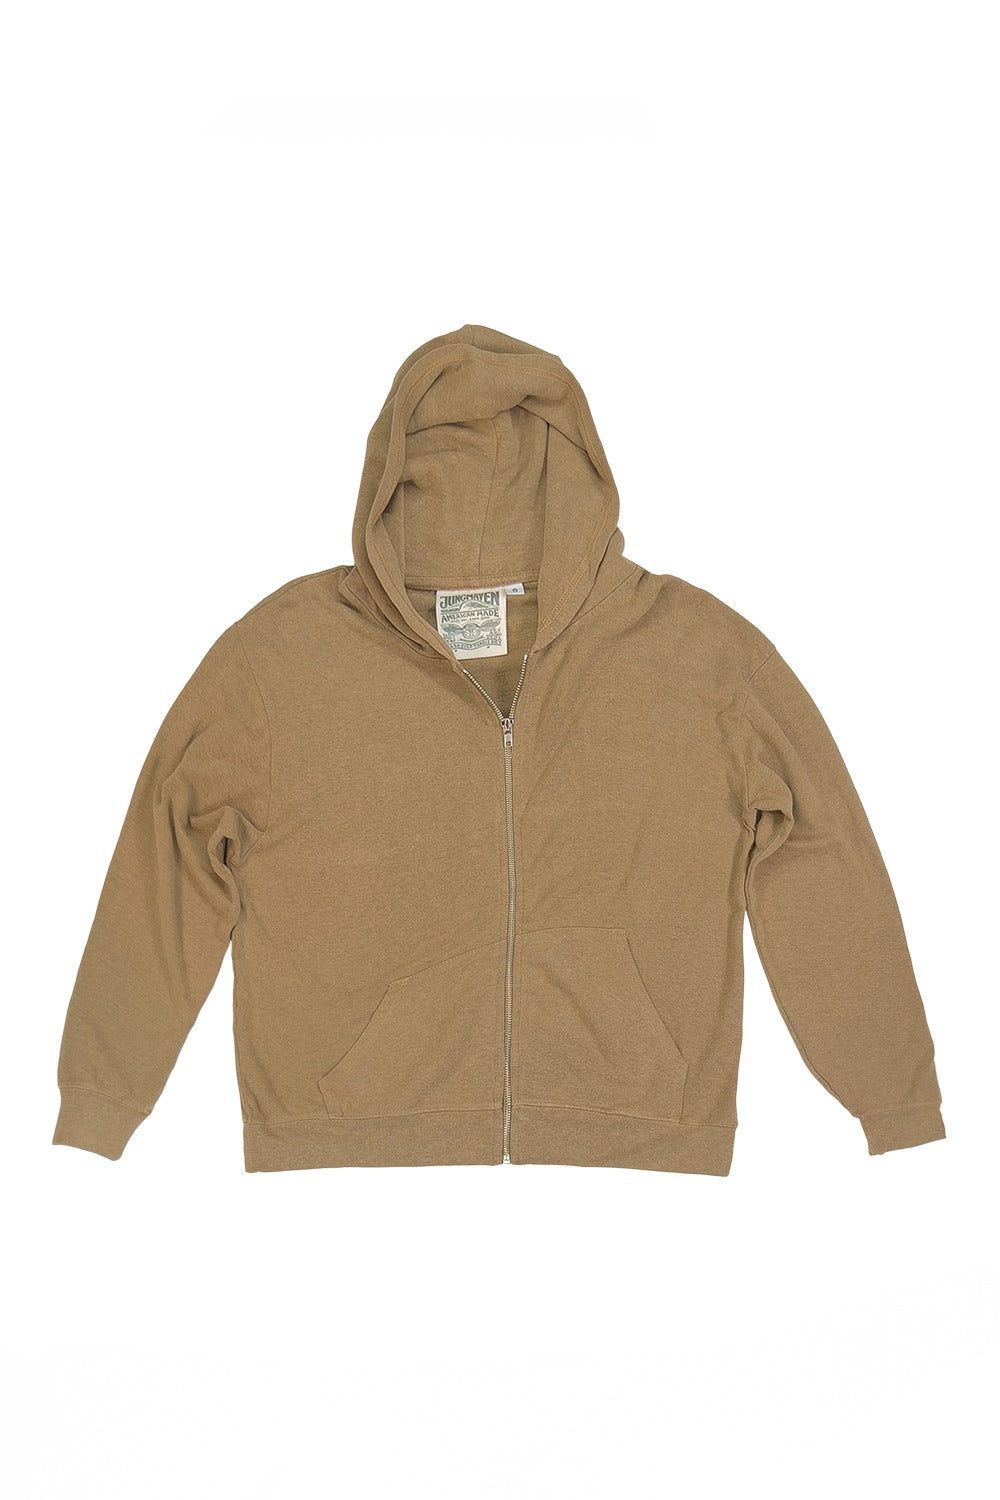 Newport Sweatshirt | Jungmaven Hemp Clothing & Accessories / Color: Coyote